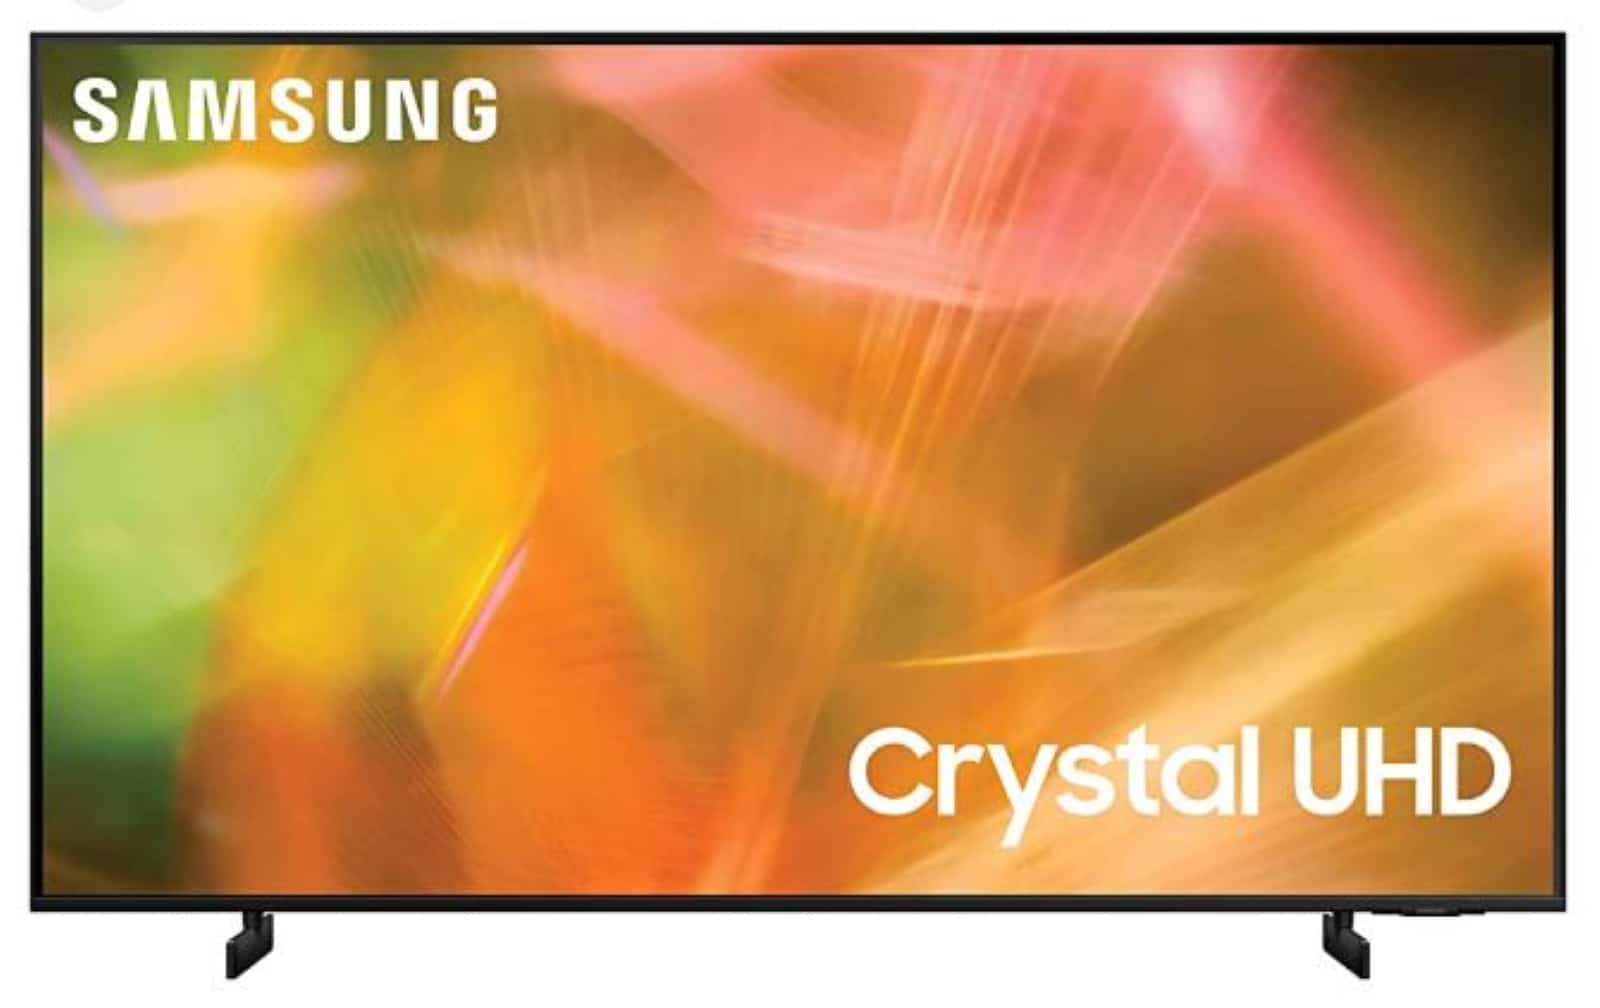 Kelebihan Smart TV Samsung Crystal UHD AU8000 4k, Bikin Mata Nyaman